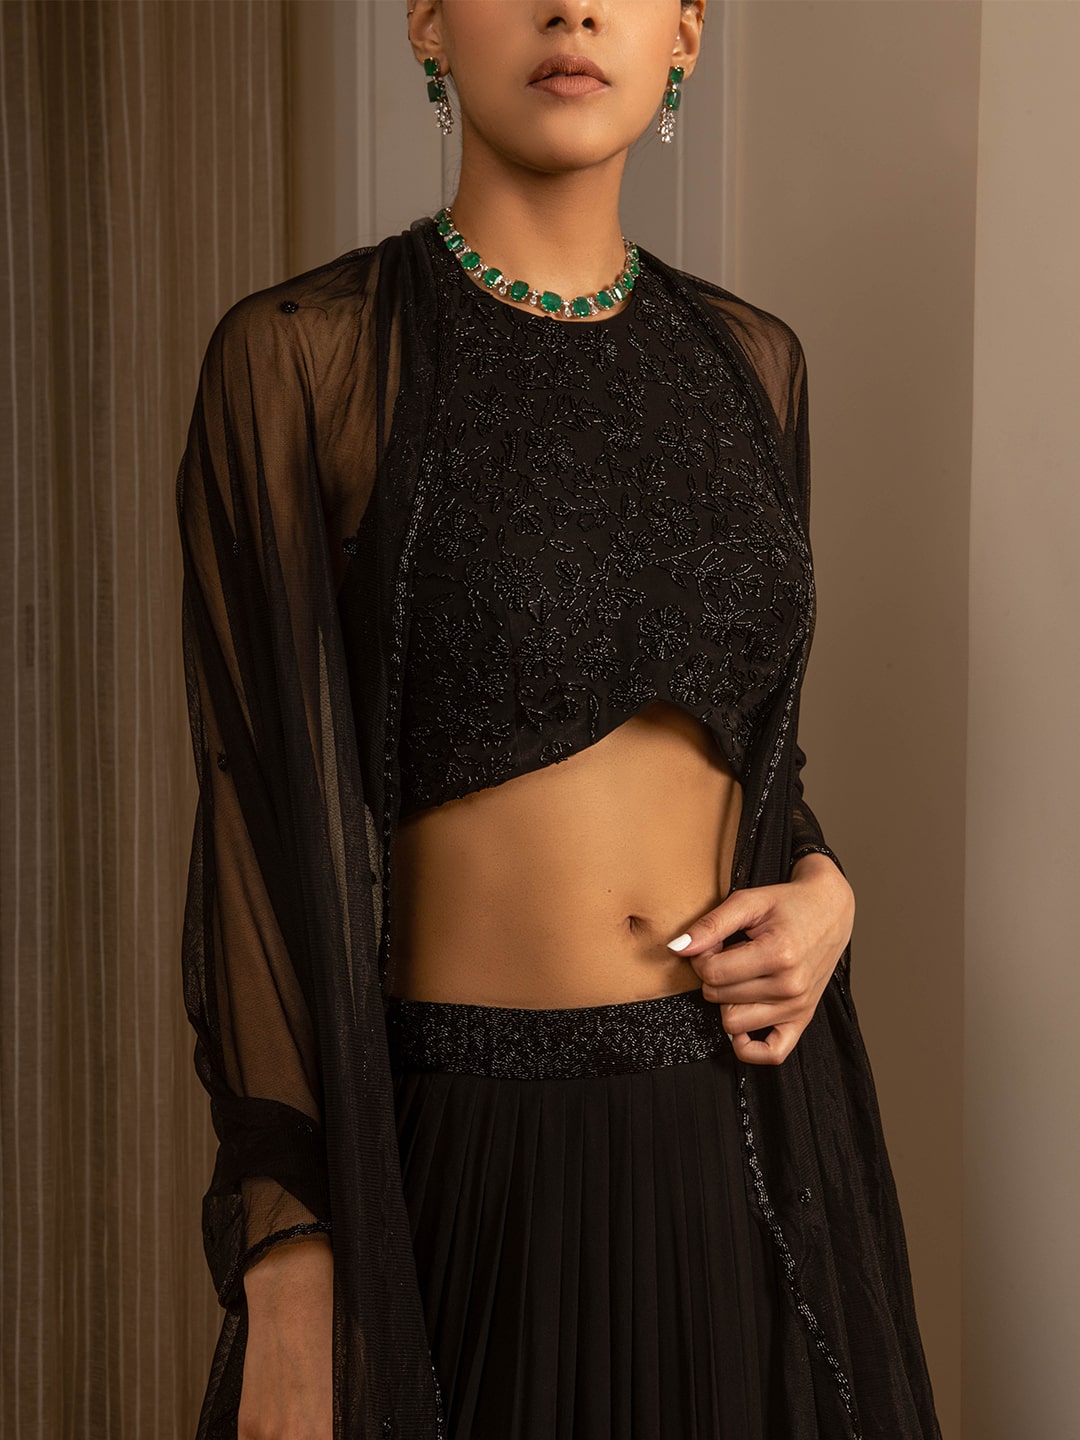 Pin by Deepika Sikri on Beautiful Dresses 👗 | Indian fashion dresses,  Indian gowns dresses, Dress indian style